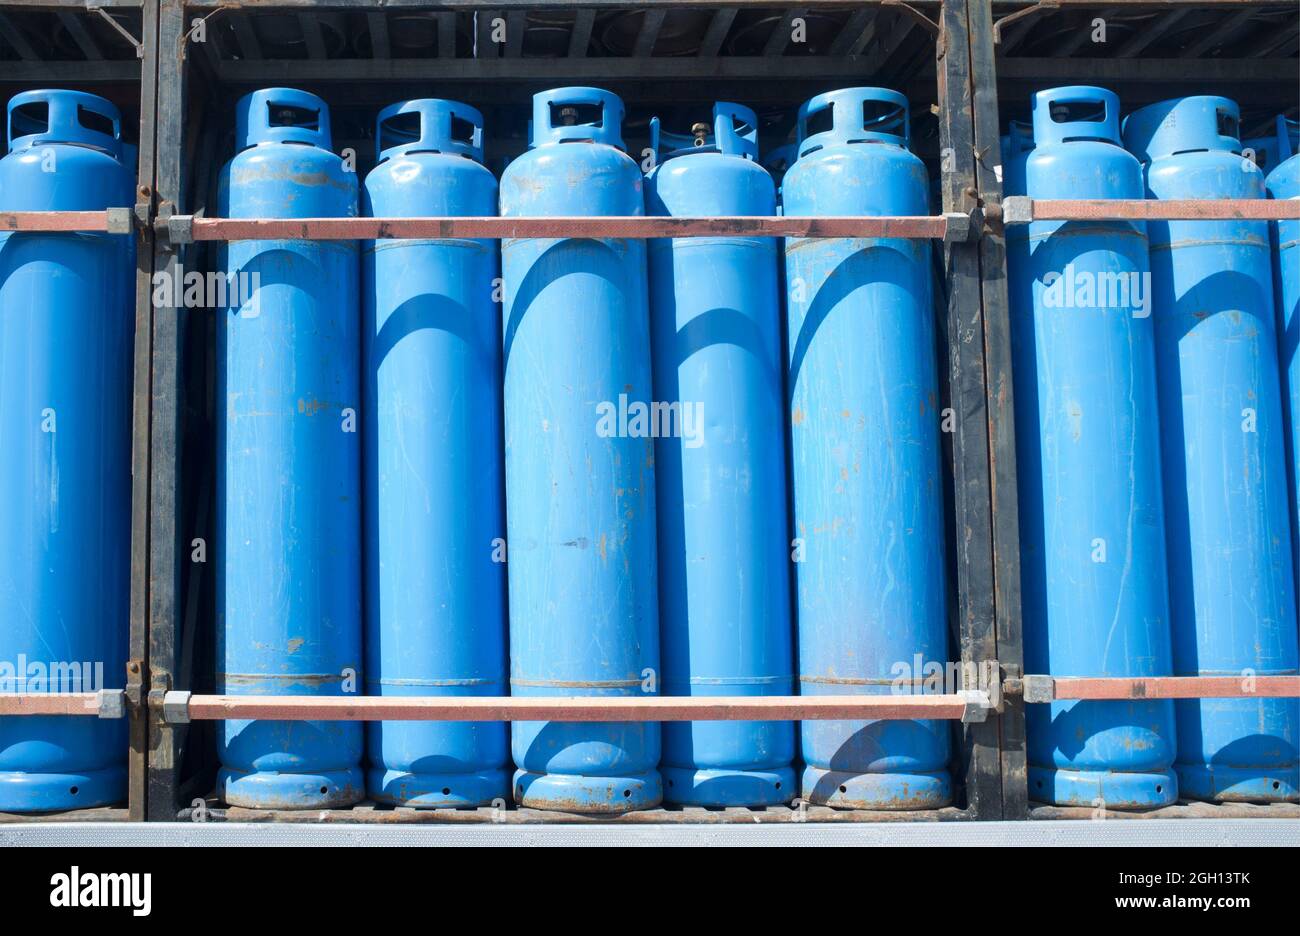 Carichi di bombole blu di gas propano assortite su un camion. Trasporto di materiali pericolosi. Foto Stock